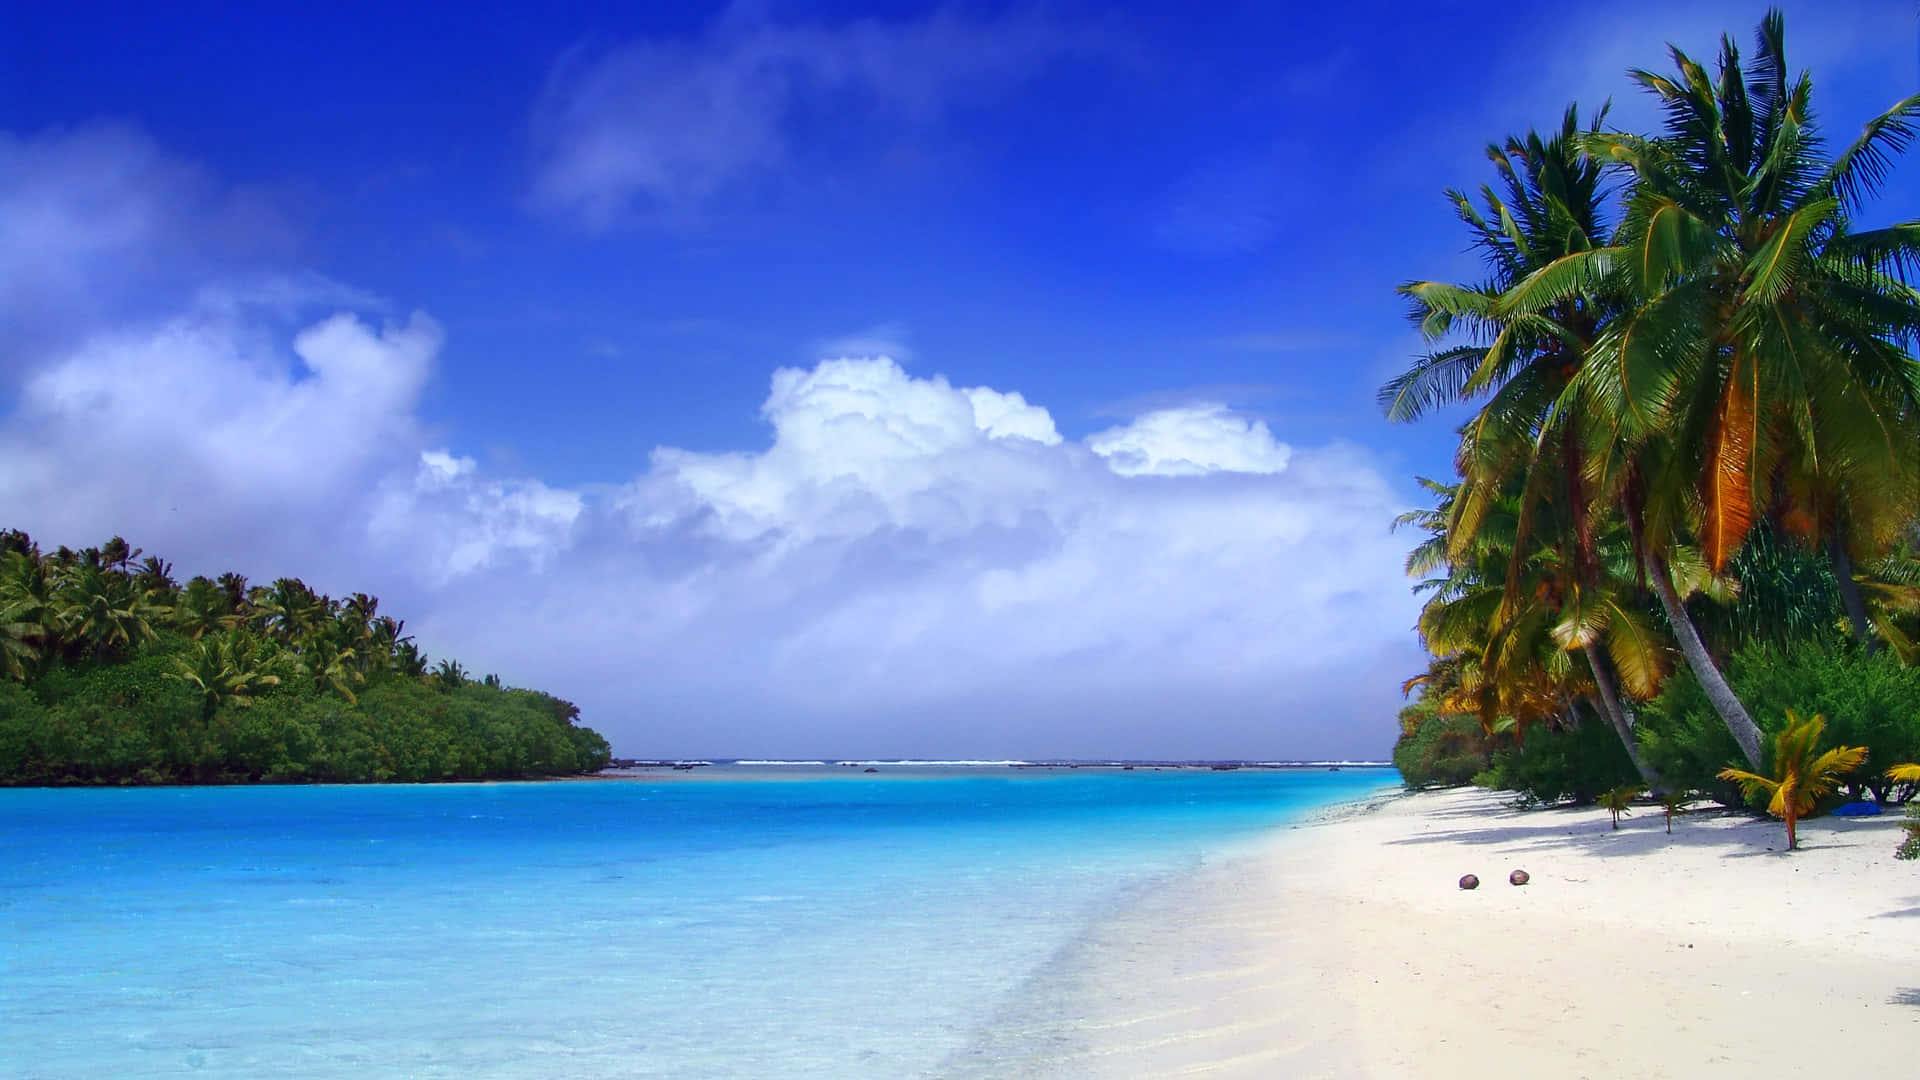 Nyd det fantastiske udsigt til en Caribisk strand. Wallpaper